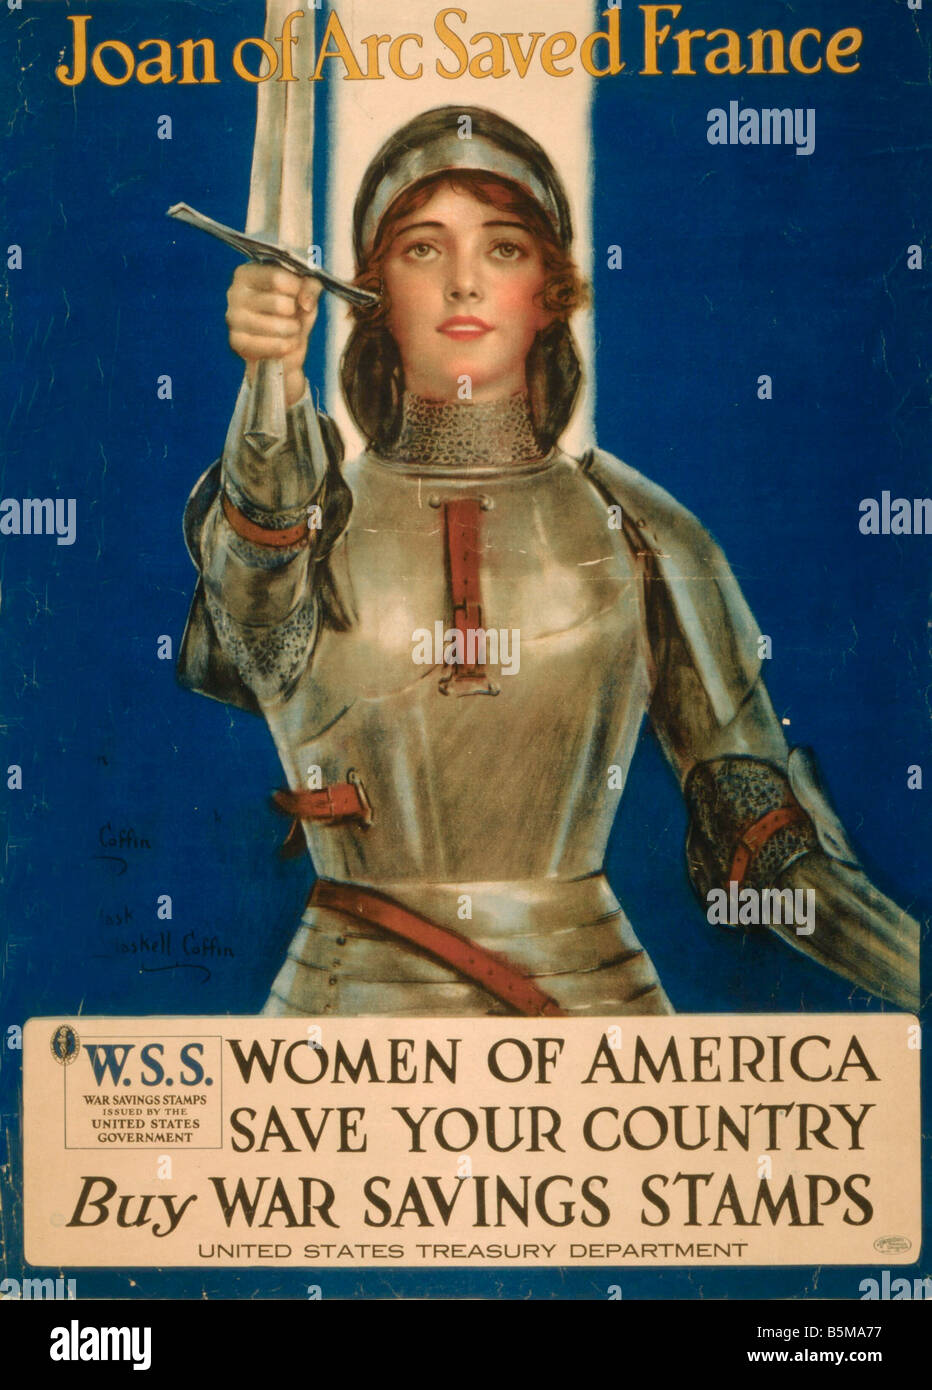 2 G55 P1 1918 71 WW I Joan of Arc sauva la France de l'histoire de l'affiche de propagande de la Première Guerre mondiale, Jeanne d'Arc a sauvé la France d'Amérique femmes s Banque D'Images